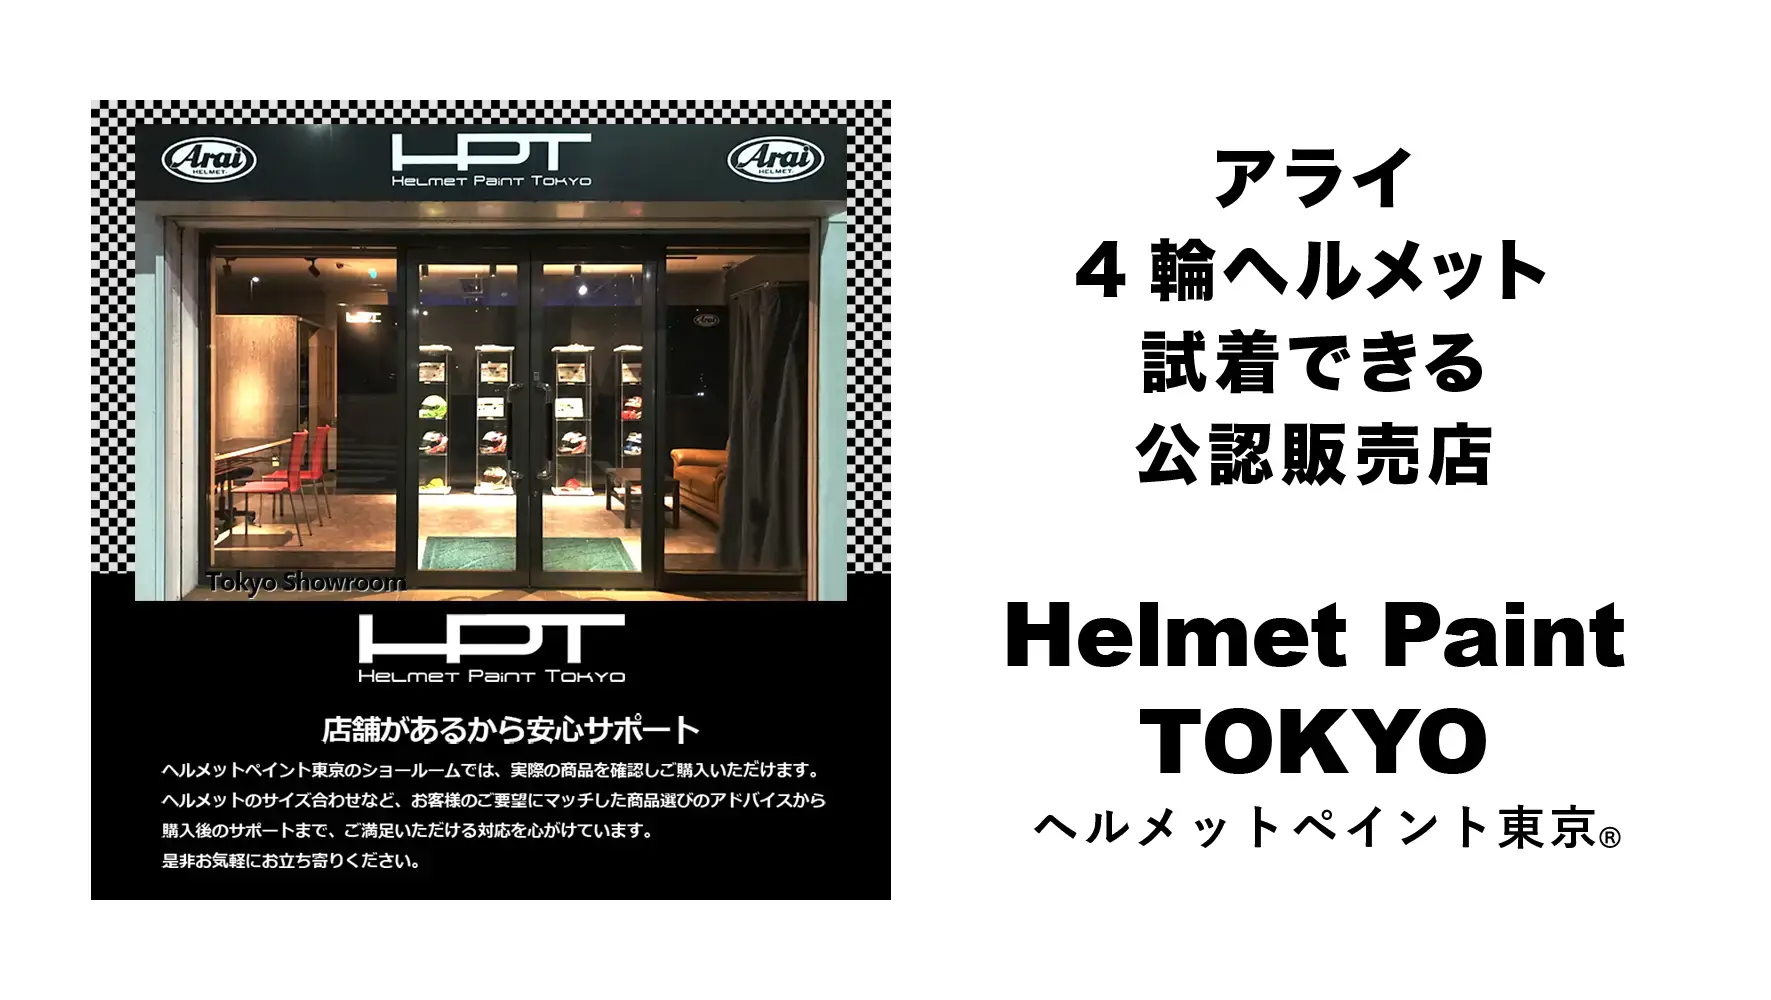 アライ4輪ヘルメット 試着できる公認販売店 Helmet Paint TOKYO